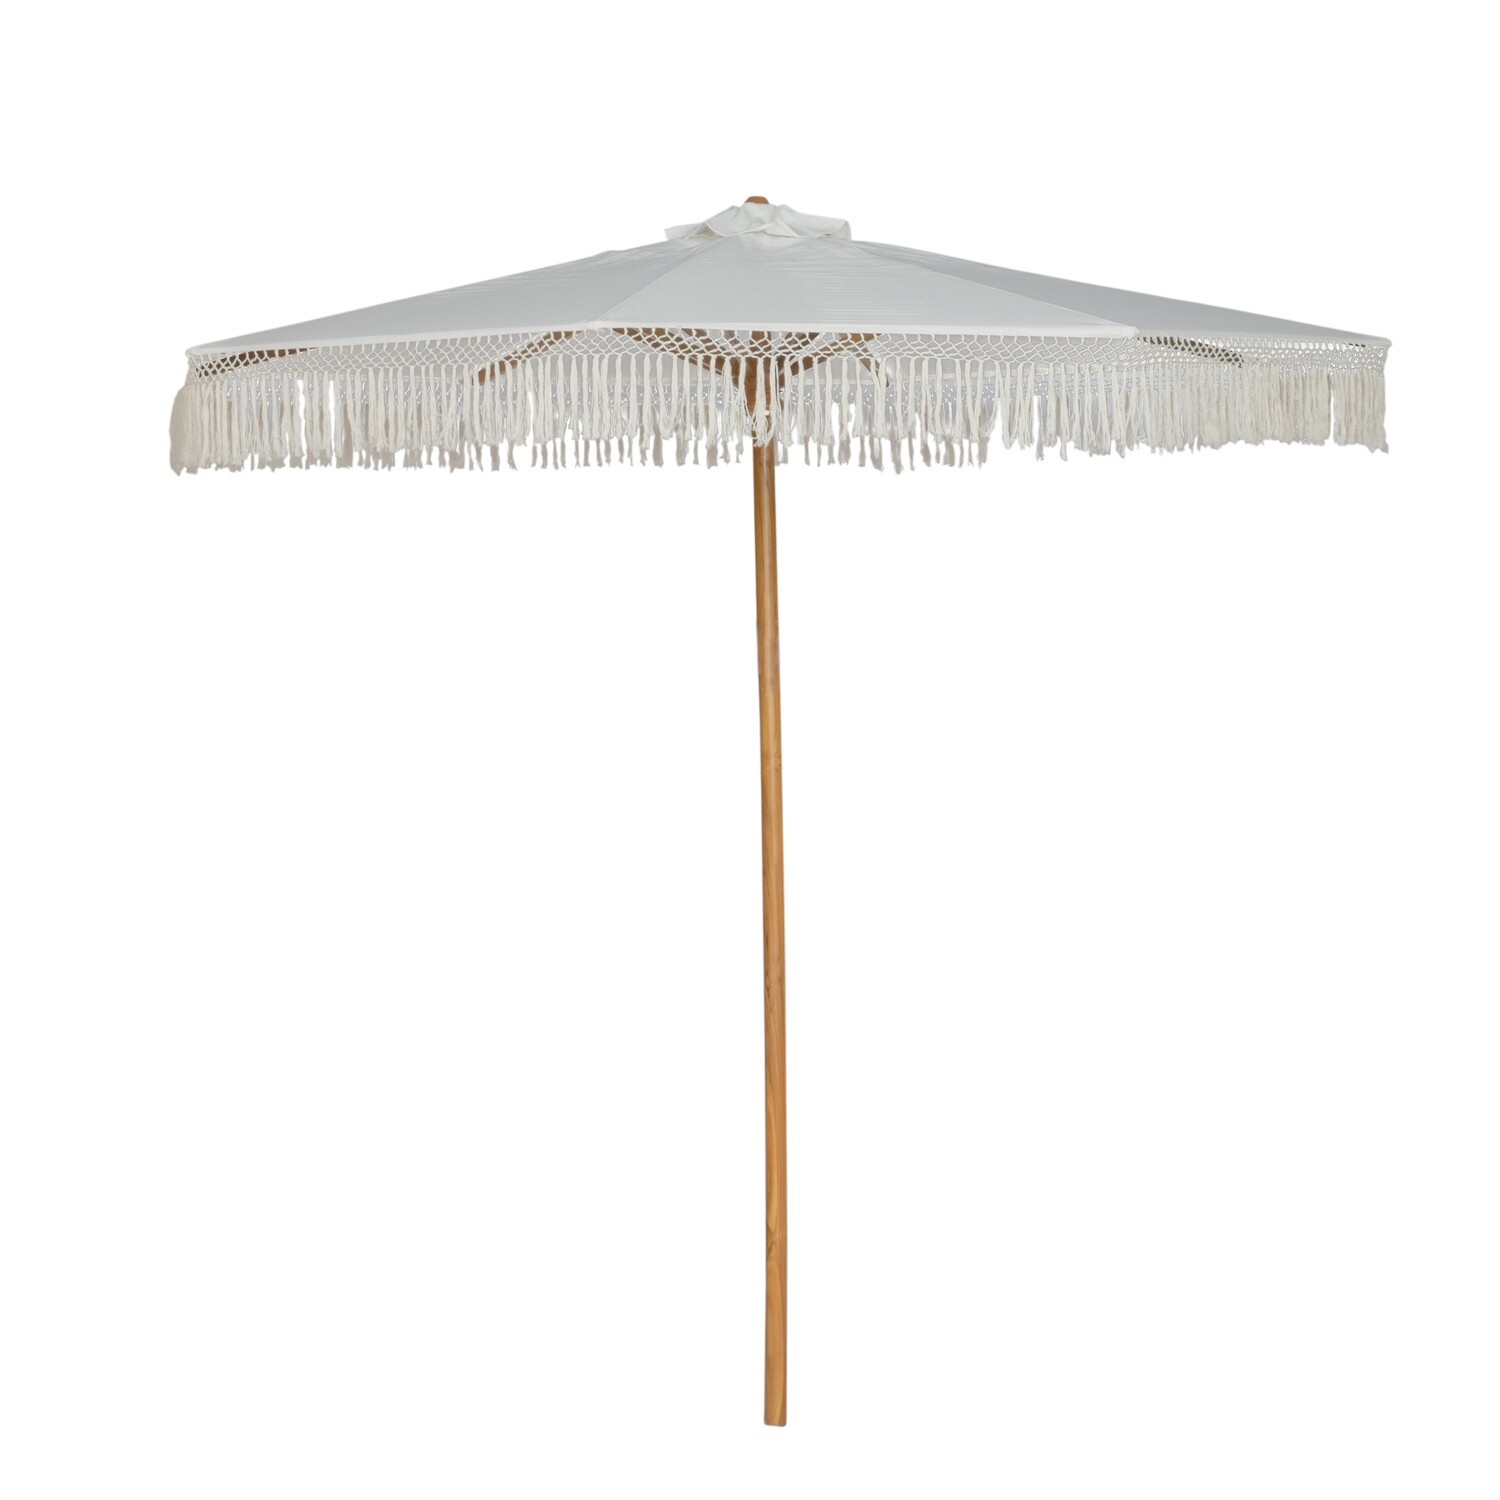 Teak Ceremonial Umbrella (250cm)